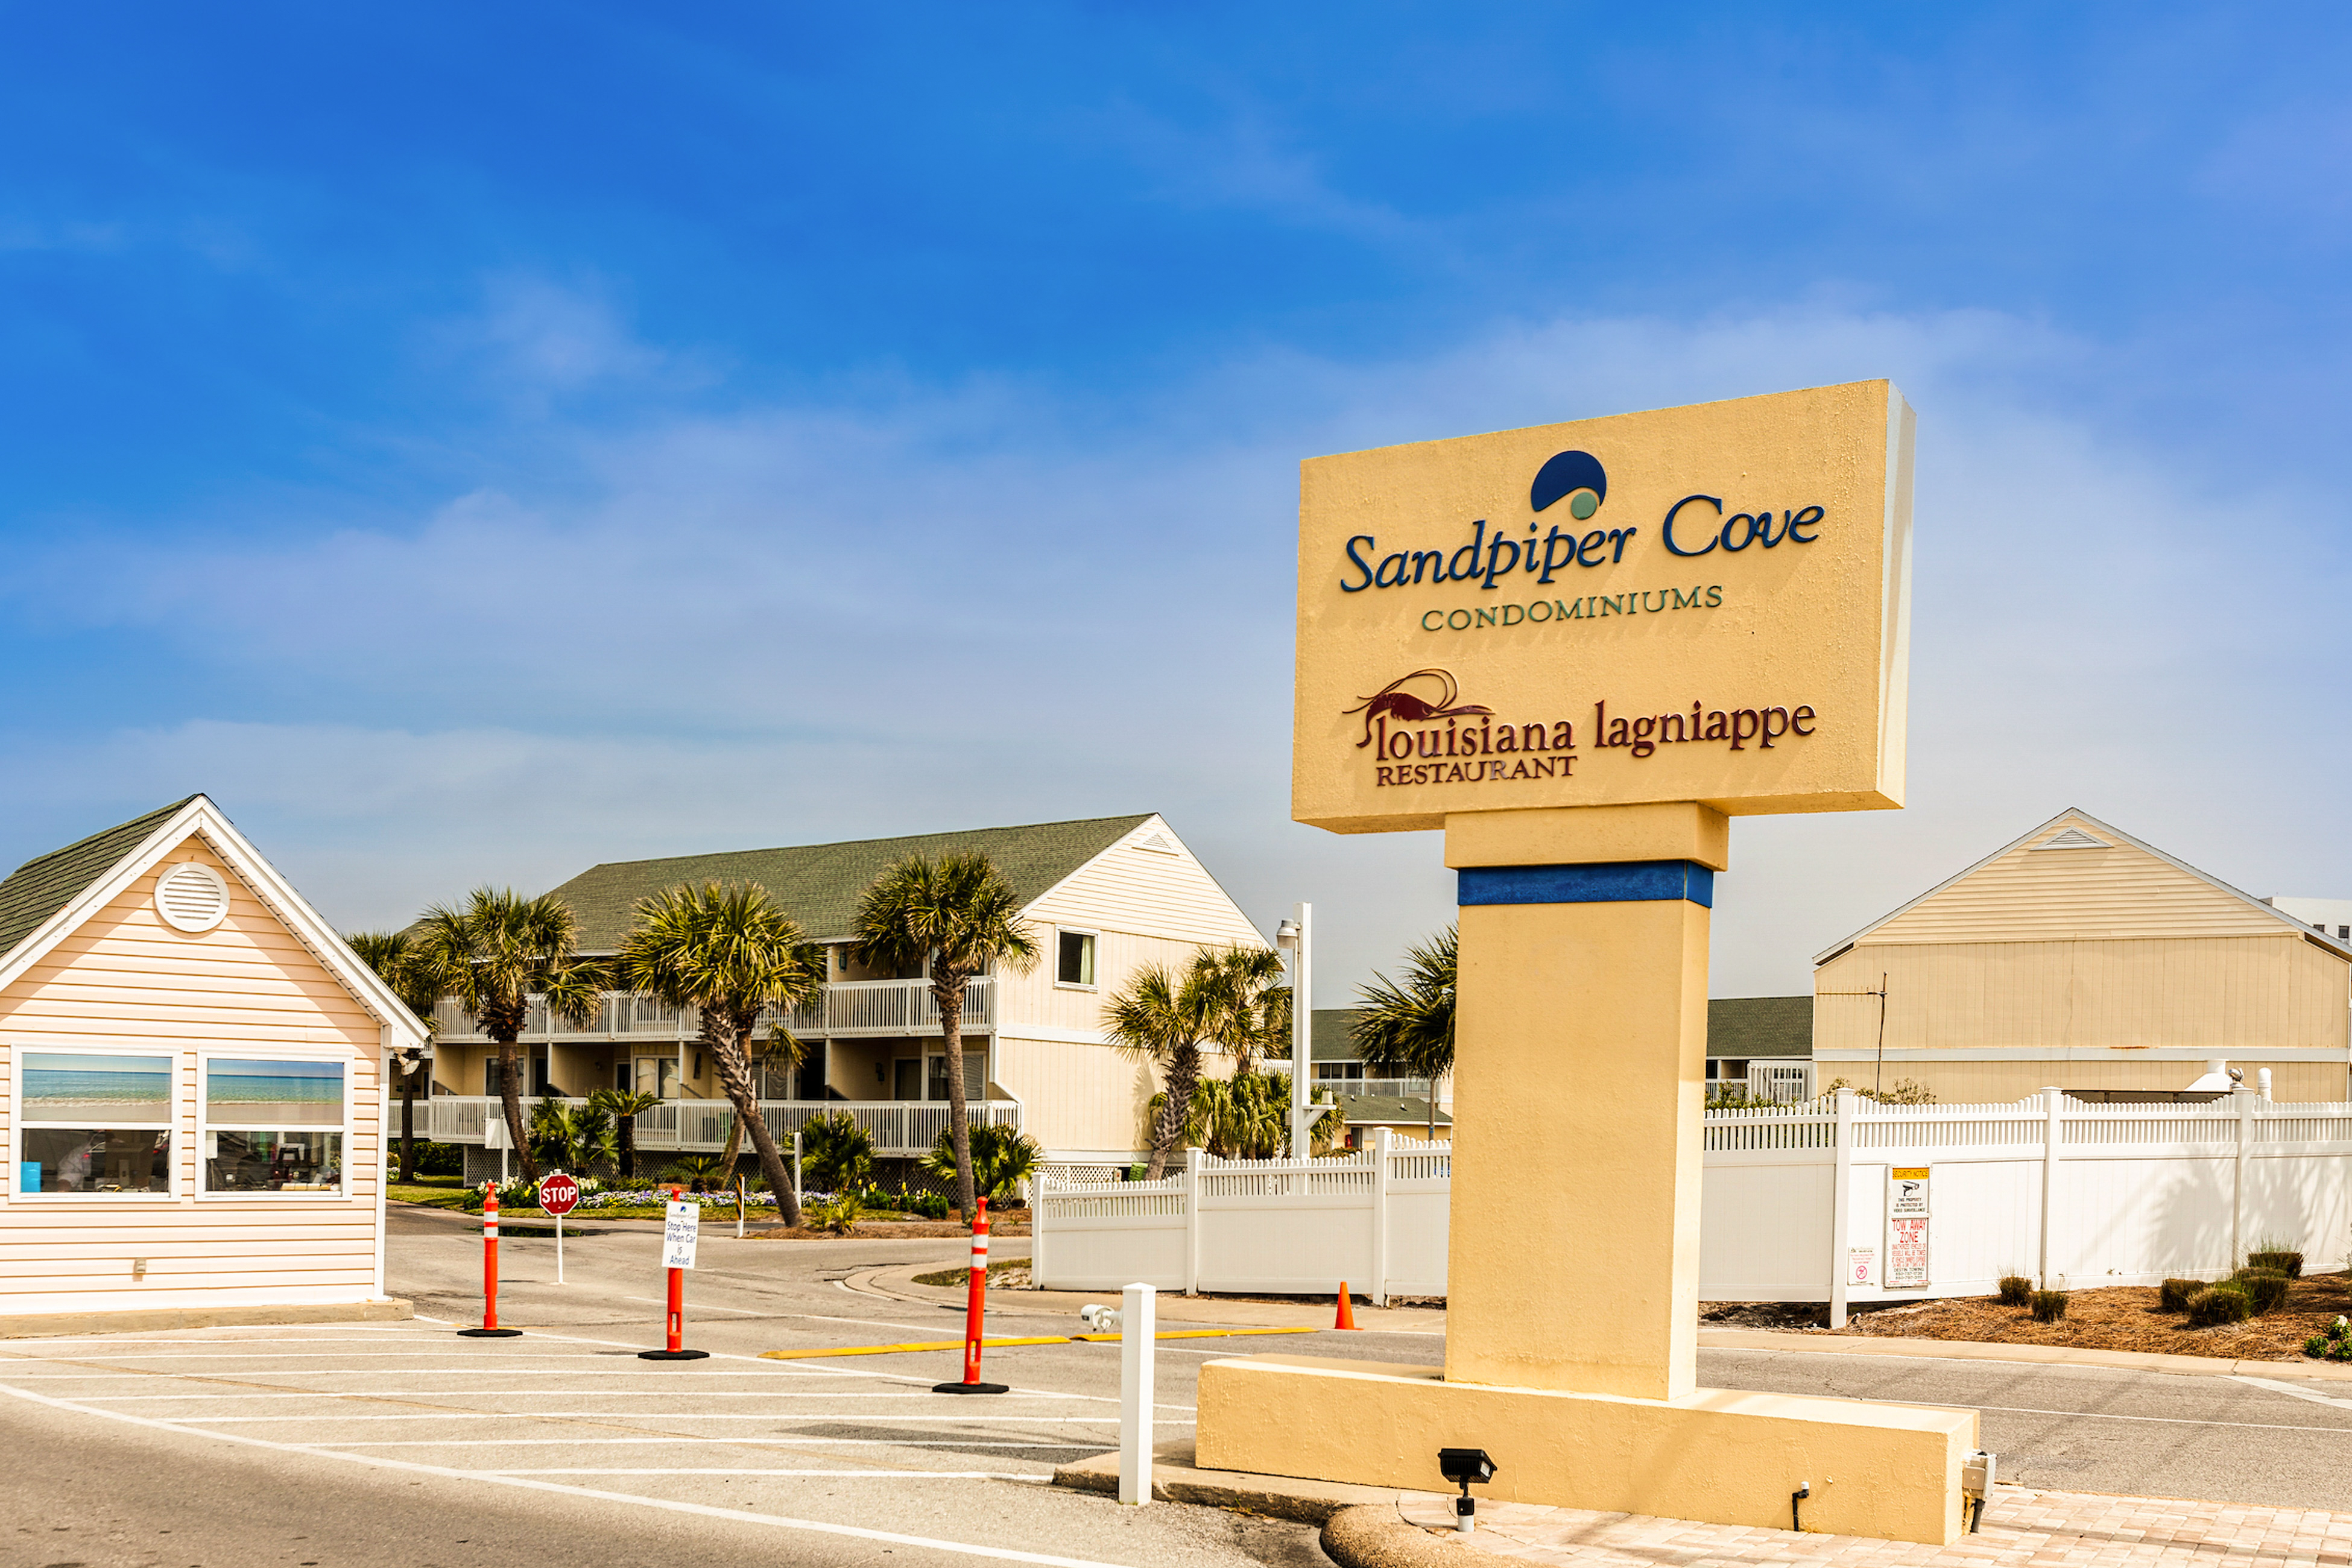 Sandpiper Cove 4203 Condo rental in Sandpiper Cove in Destin Florida - #23